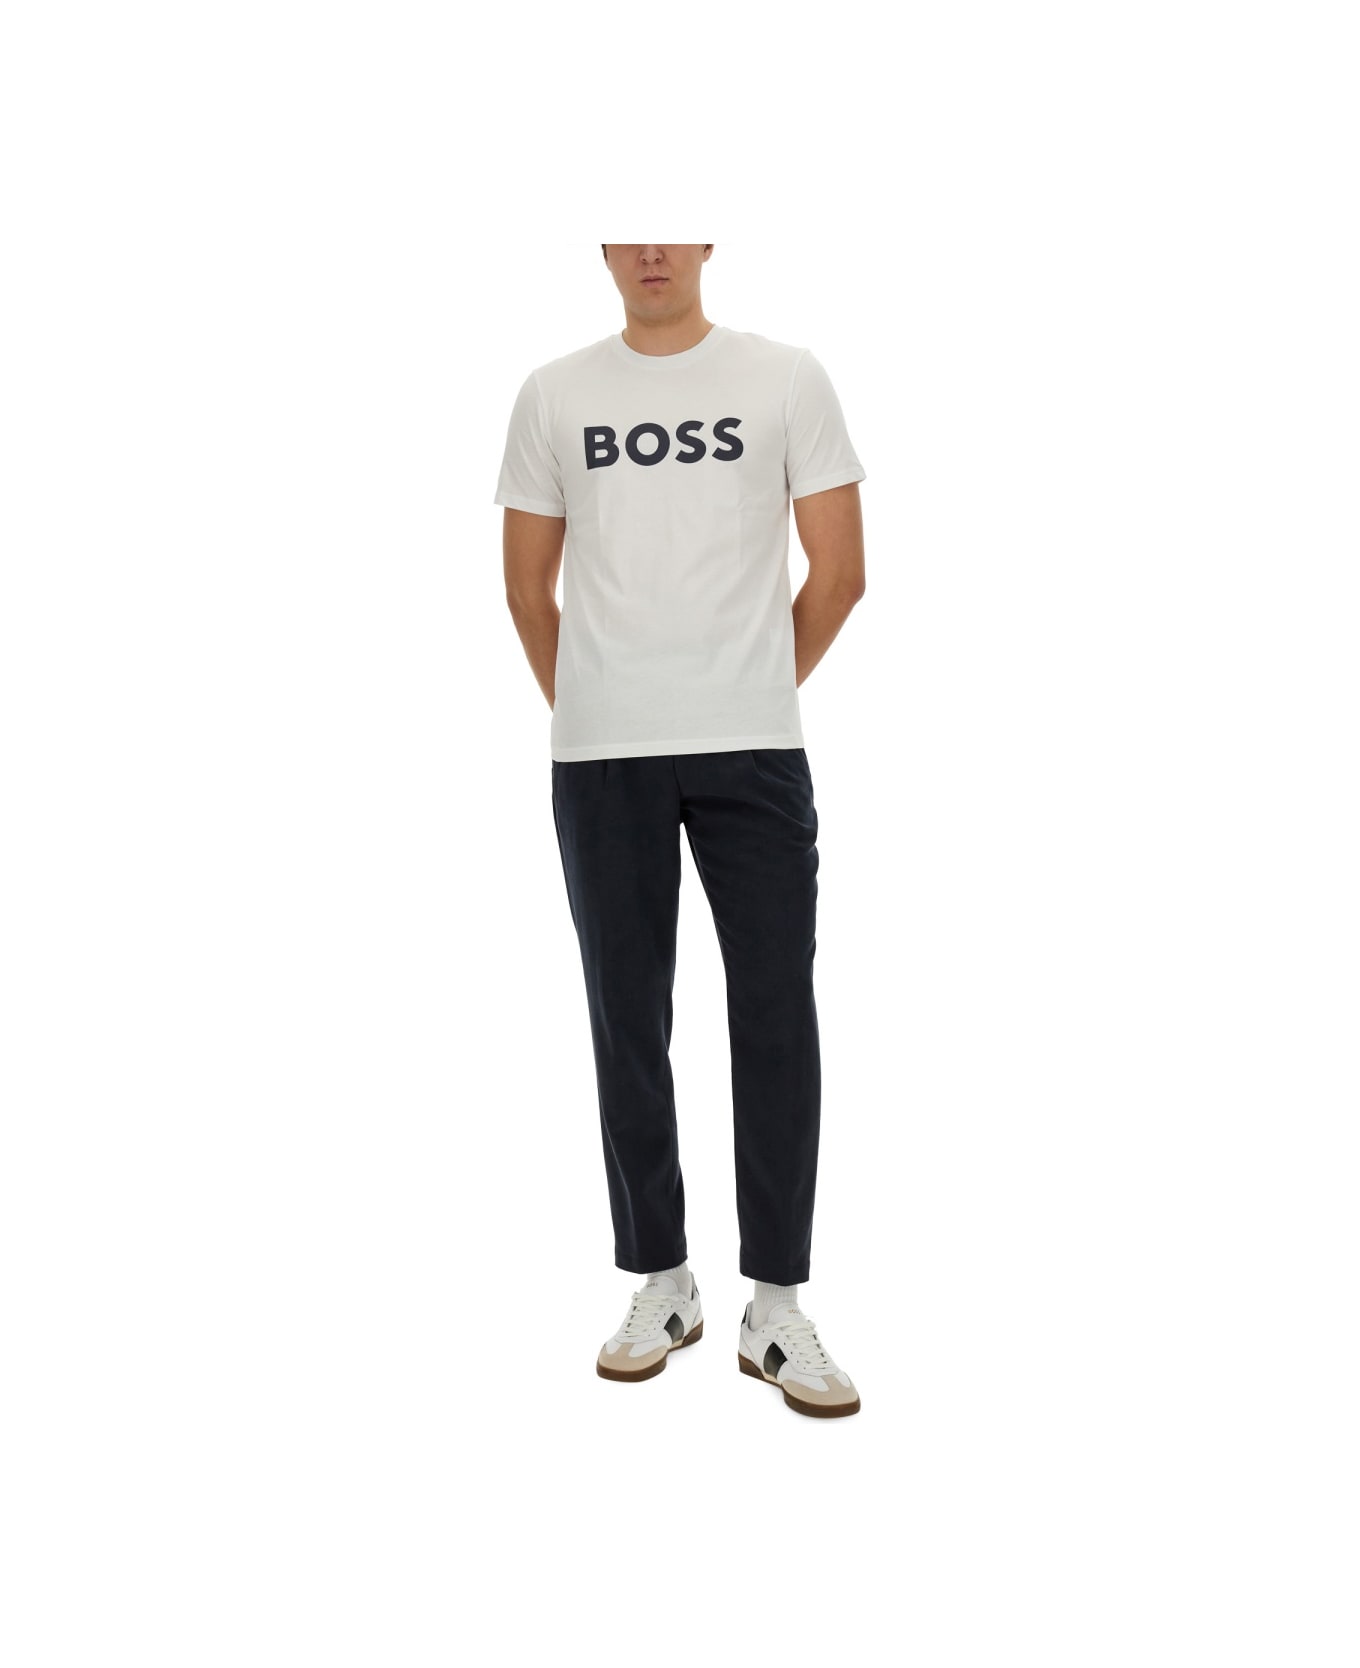 Hugo Boss Logo Print T-shirt - WHITE シャツ